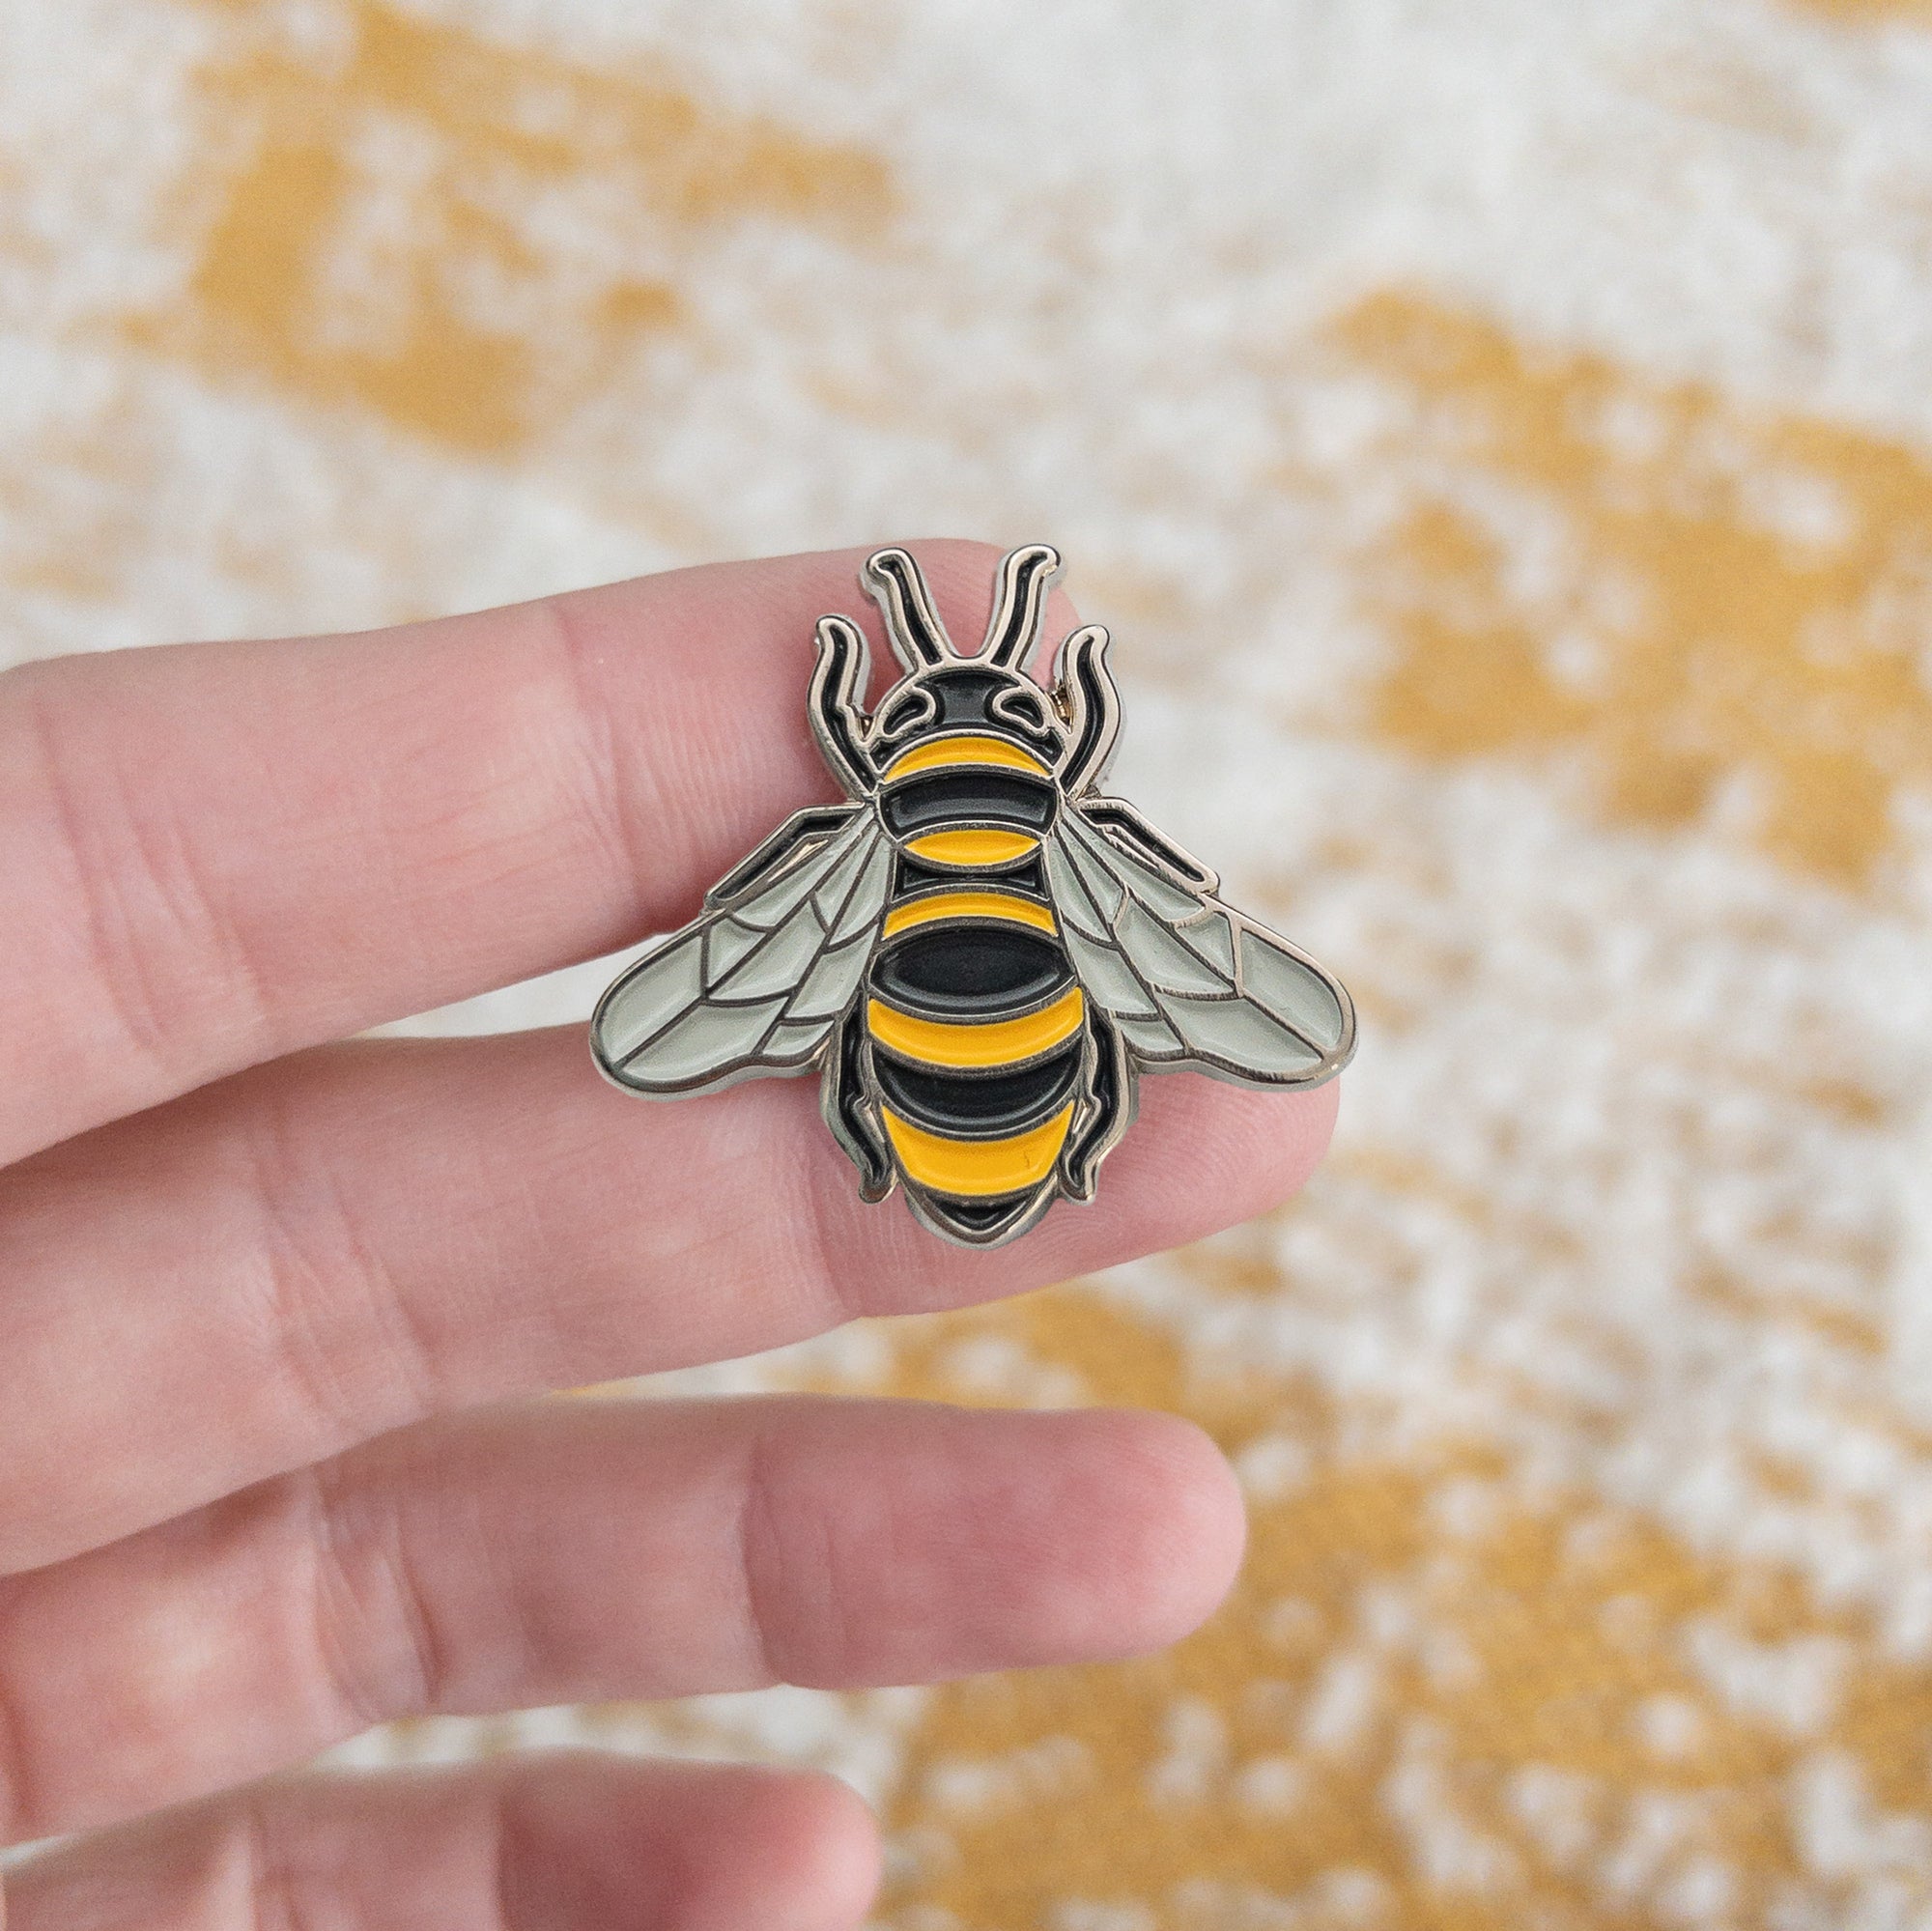 honeybee enamel pin